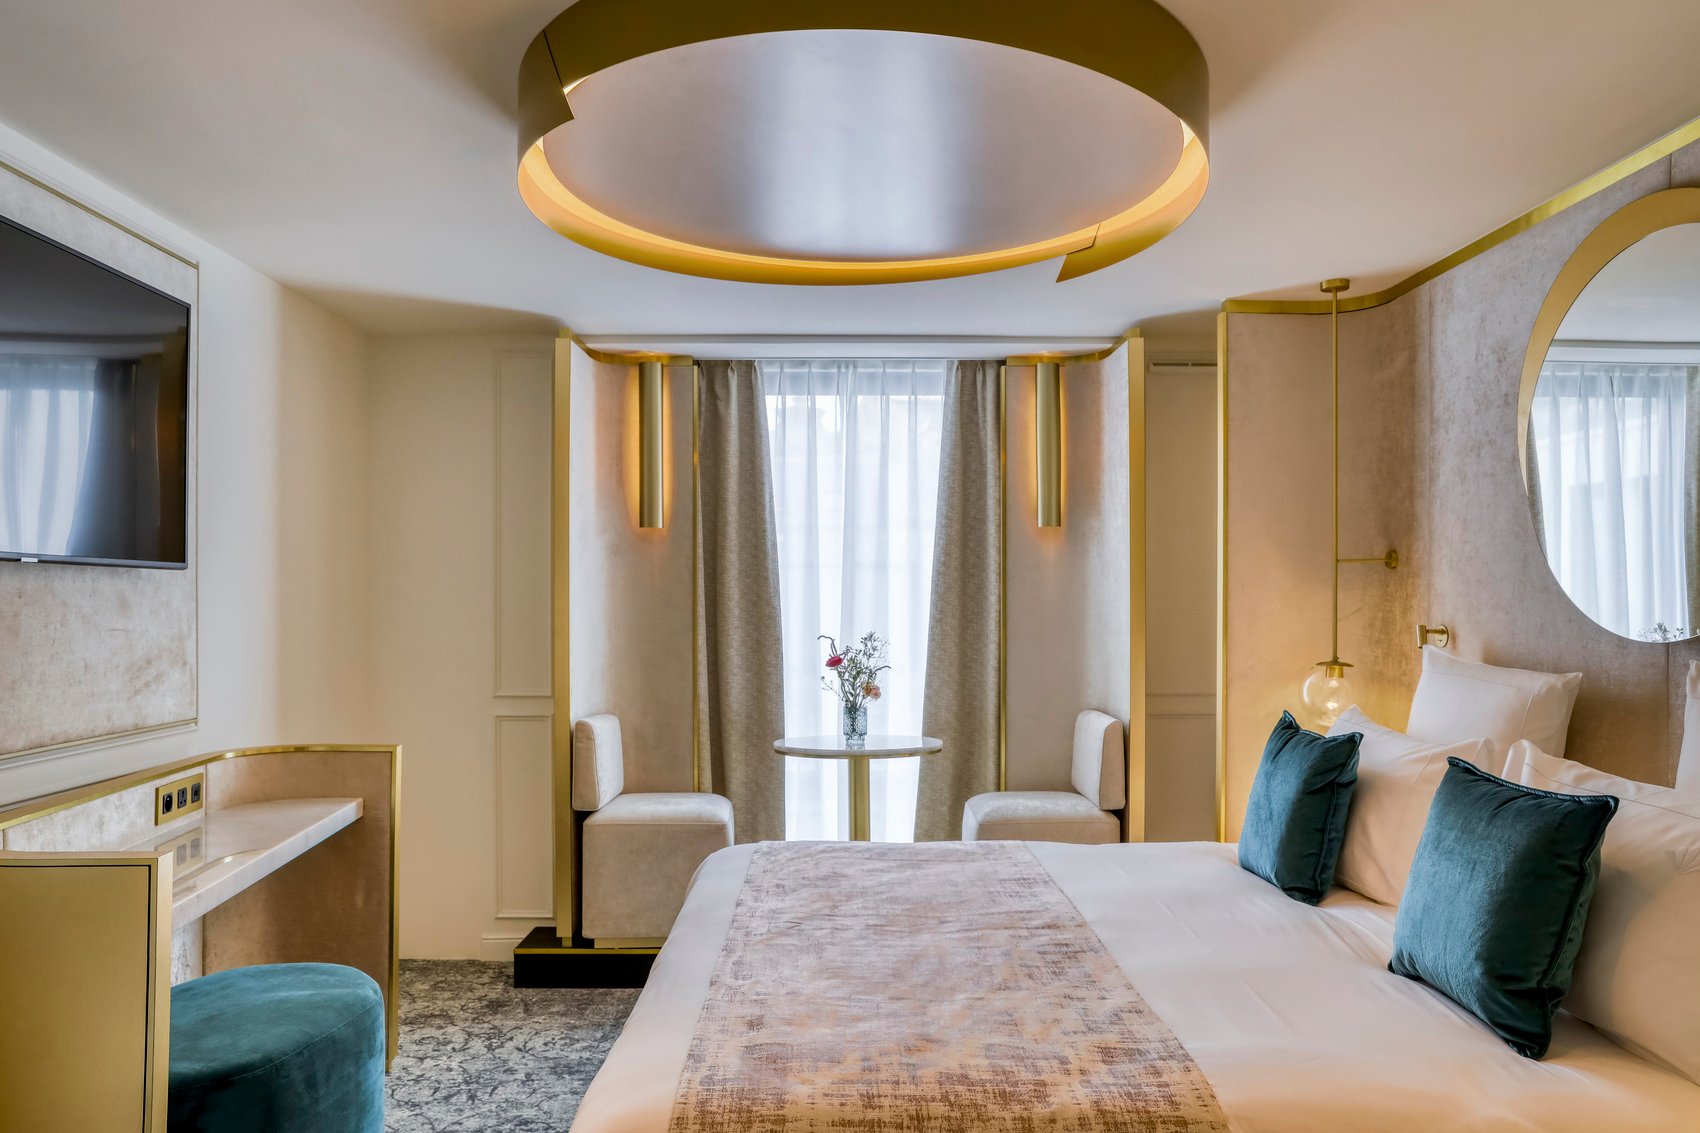 Hôtel de luxe - Maison Albar Hotels Le Vendome 5 étoiles - Suite